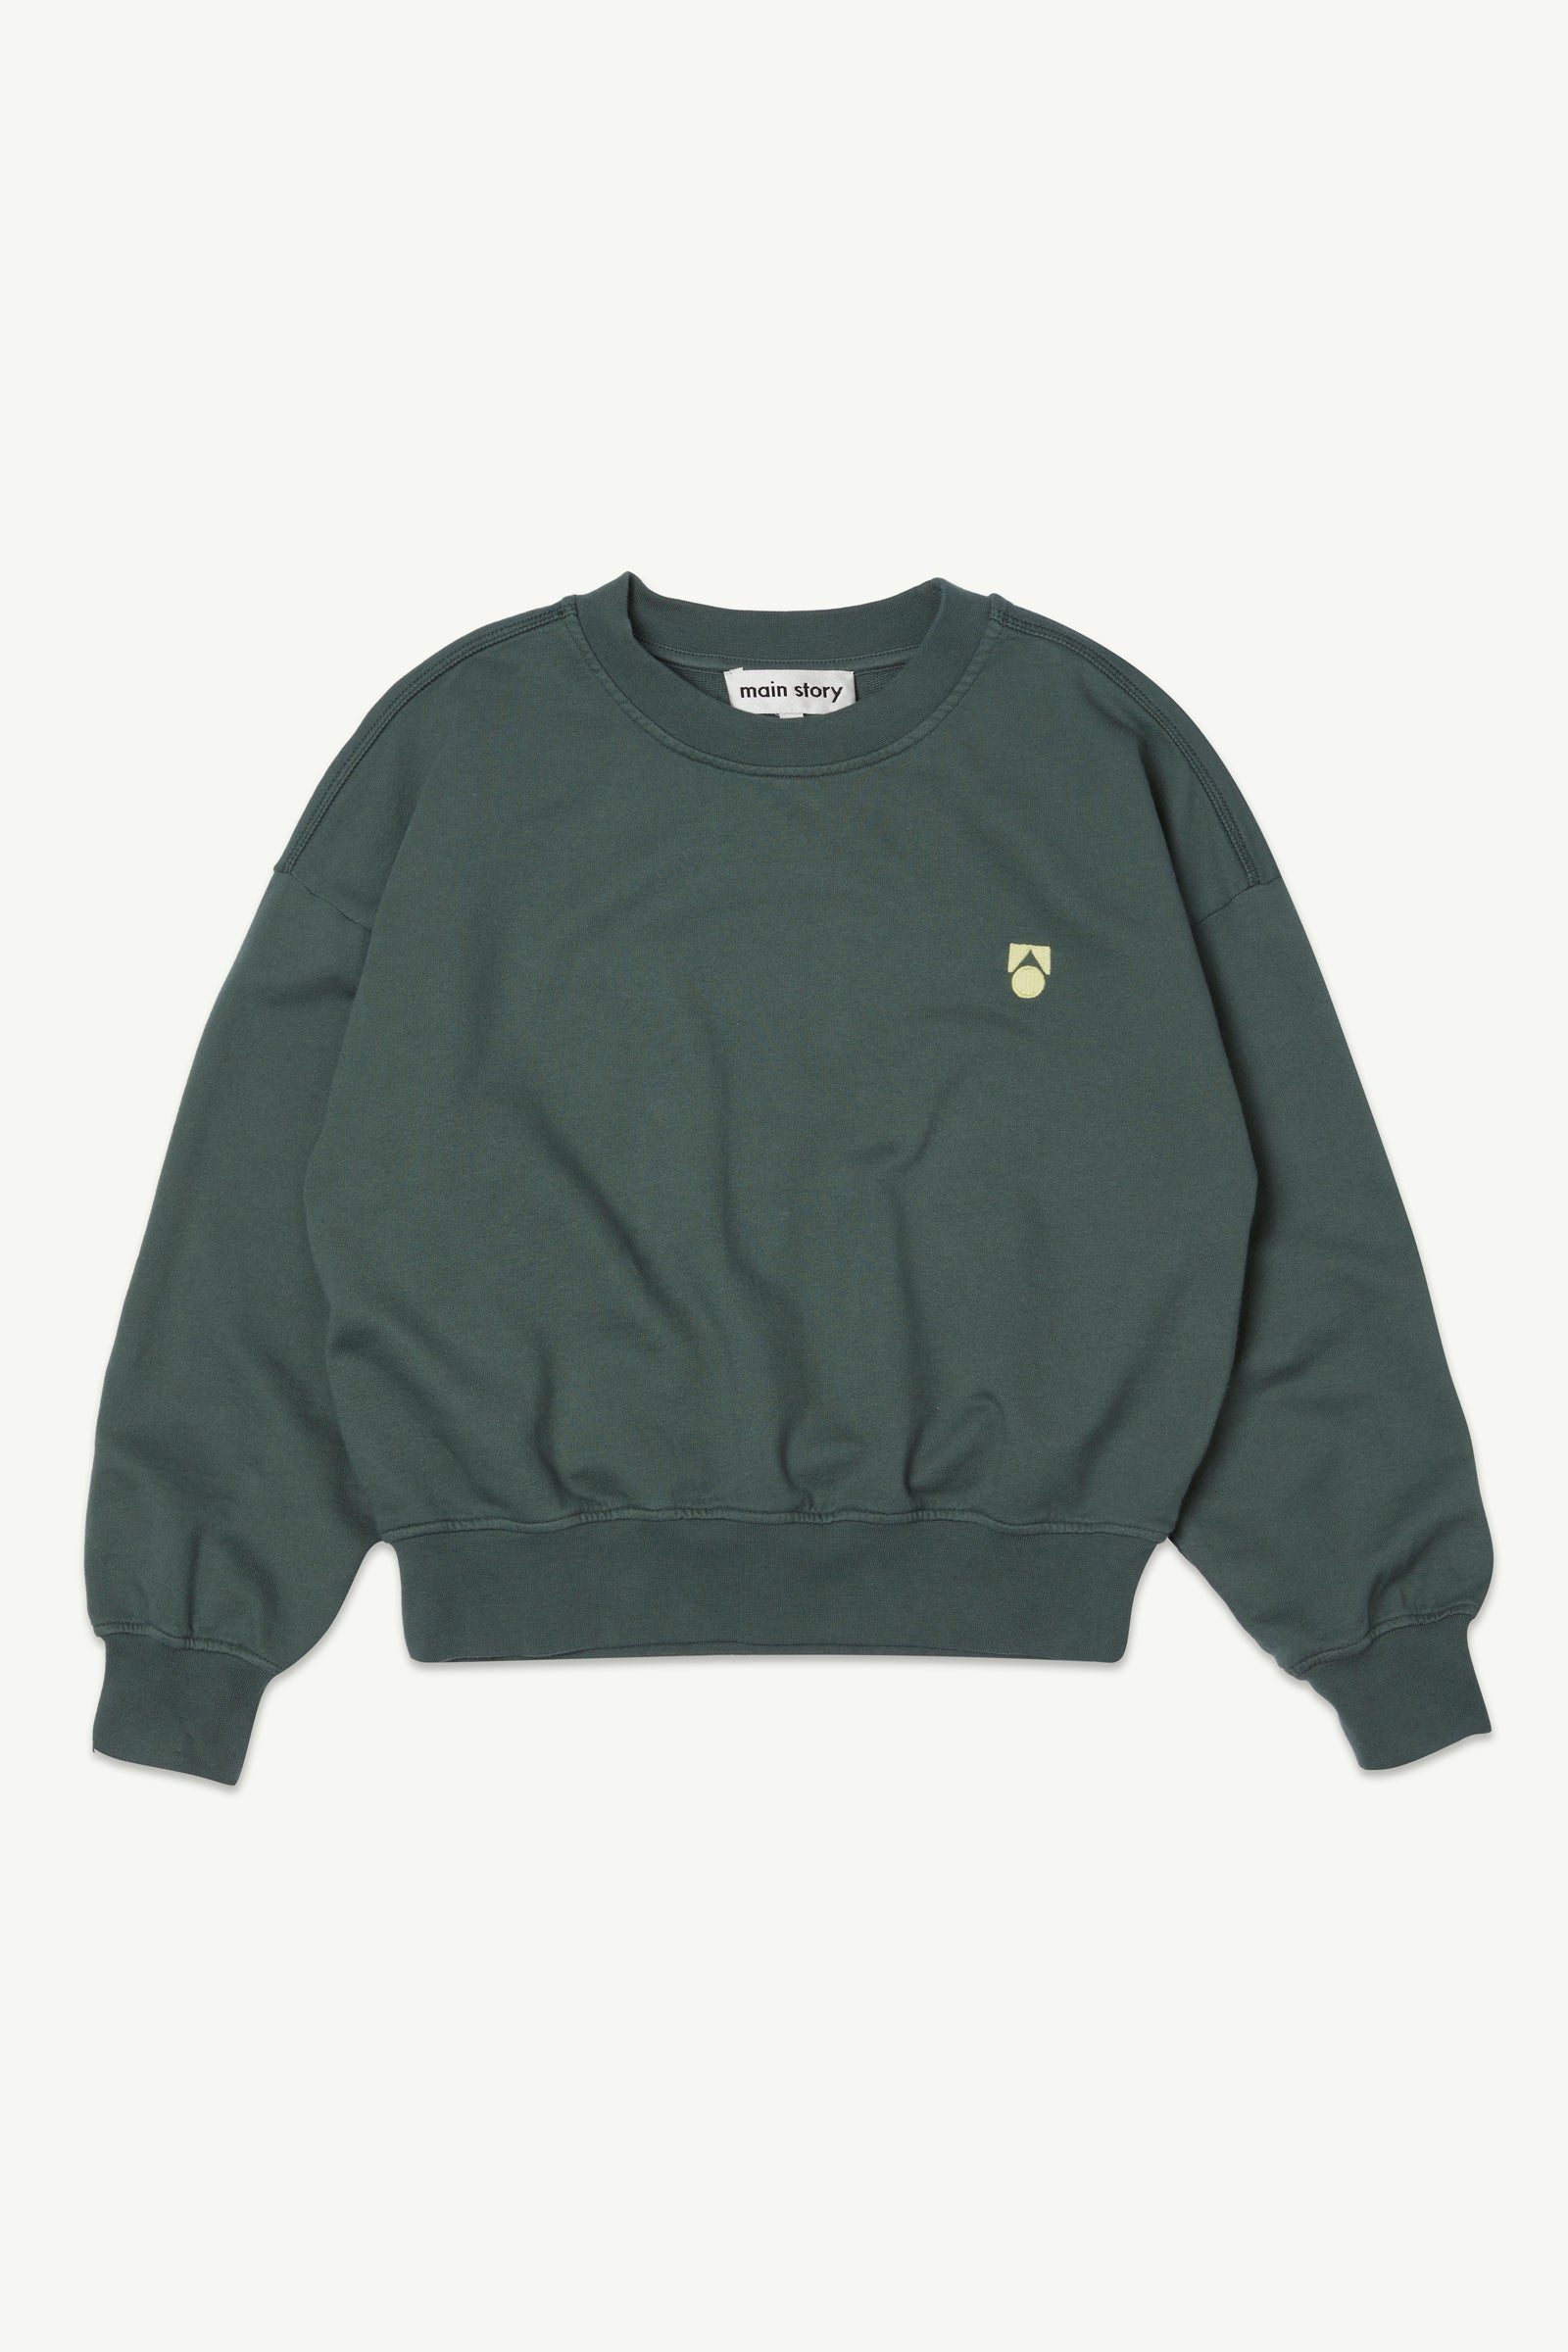 Kids sweatshirts | organic cotton | main story